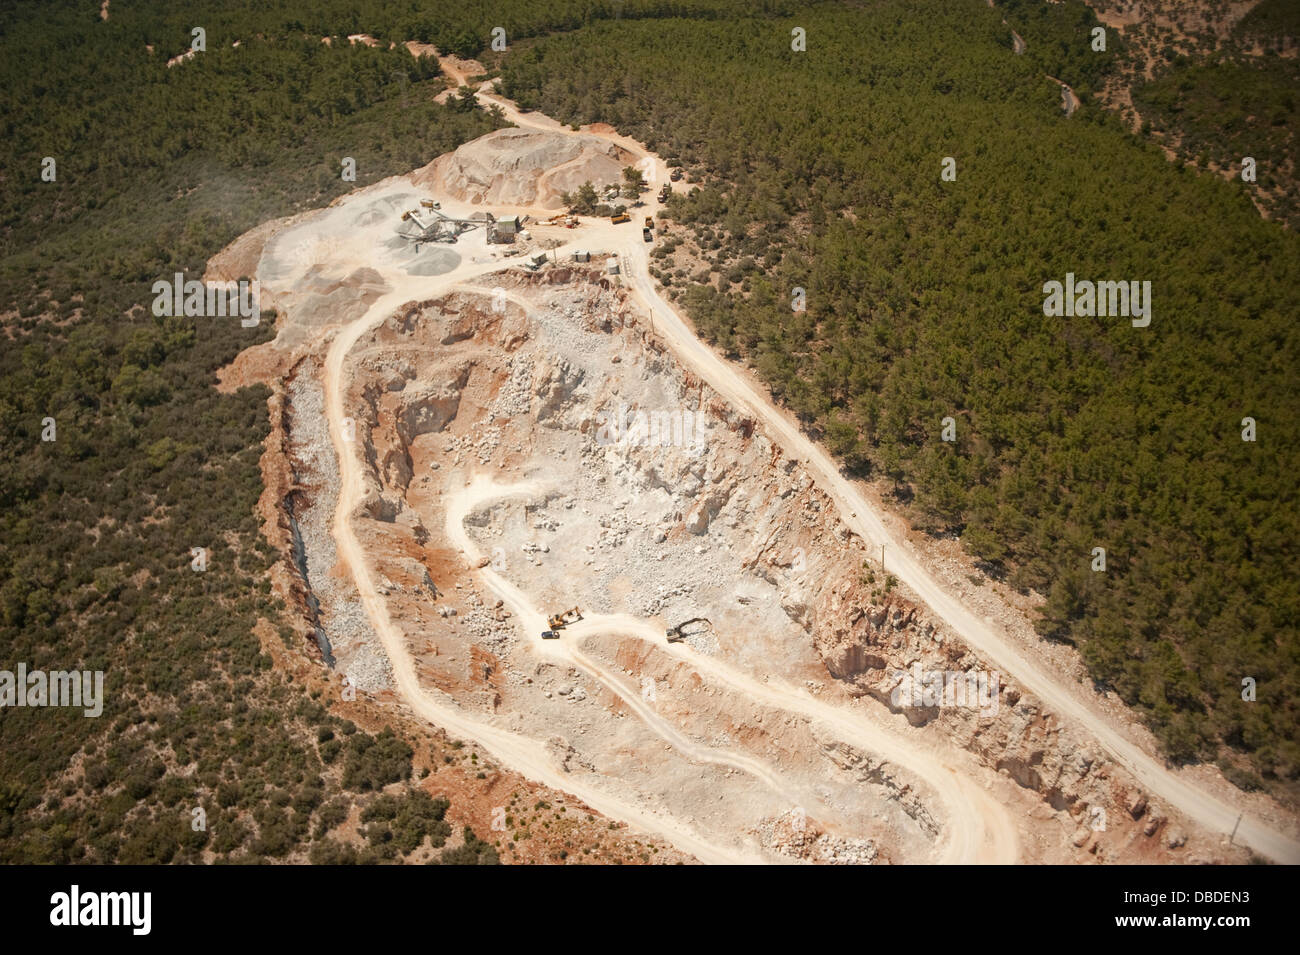 Vue aérienne de l'exploitation minière et de l'impact environnemental Milas Bodrum Turquie Banque D'Images